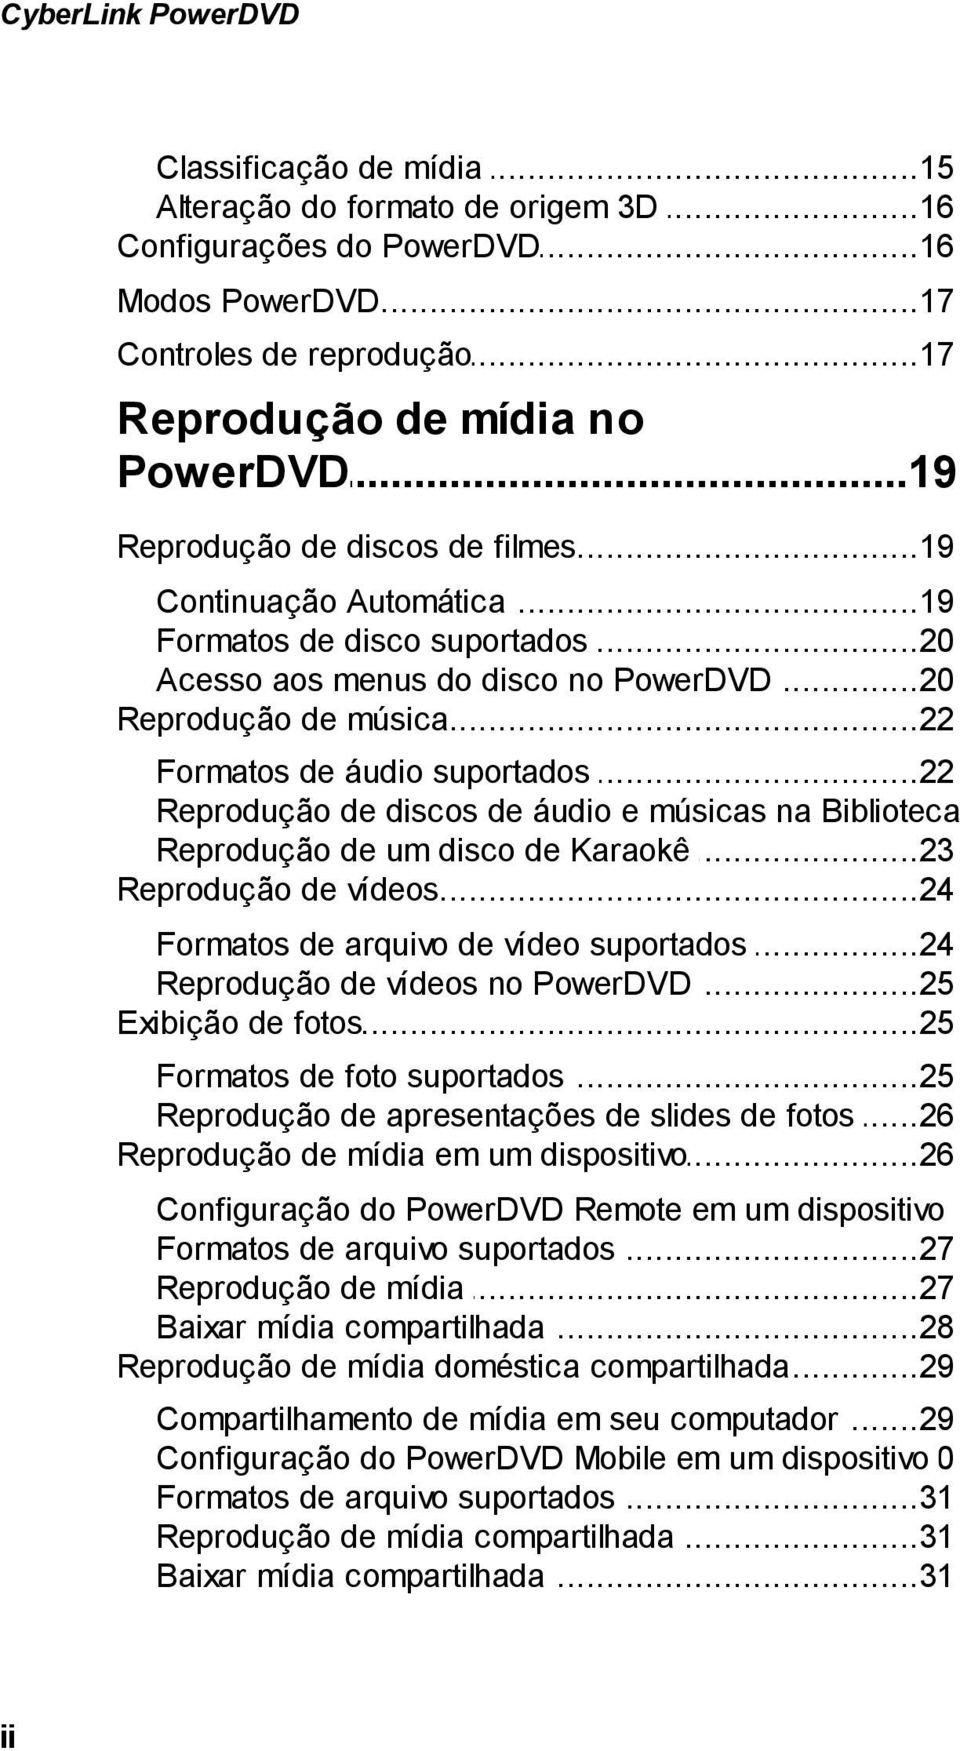 ..22 de áudio suportados Reprodução...23 de discos de áudio e músicas na Biblioteca Reprodução...23 de um disco de Karaokê Reprodução...24 de vídeos Formatos.